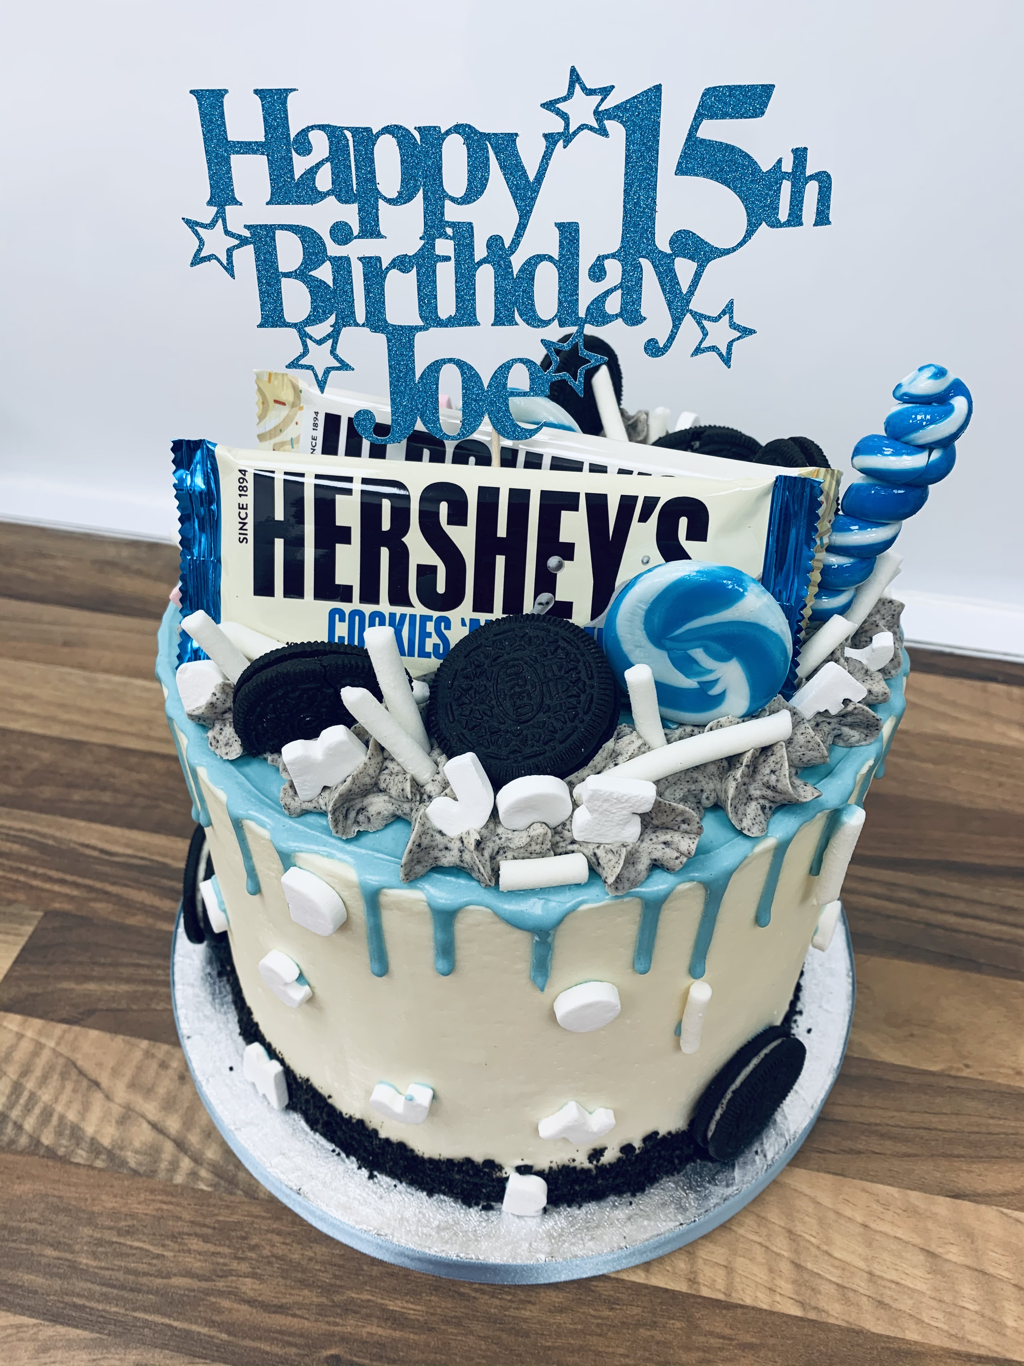 Hershey’s cookie and Creme Oreo birthday cake 